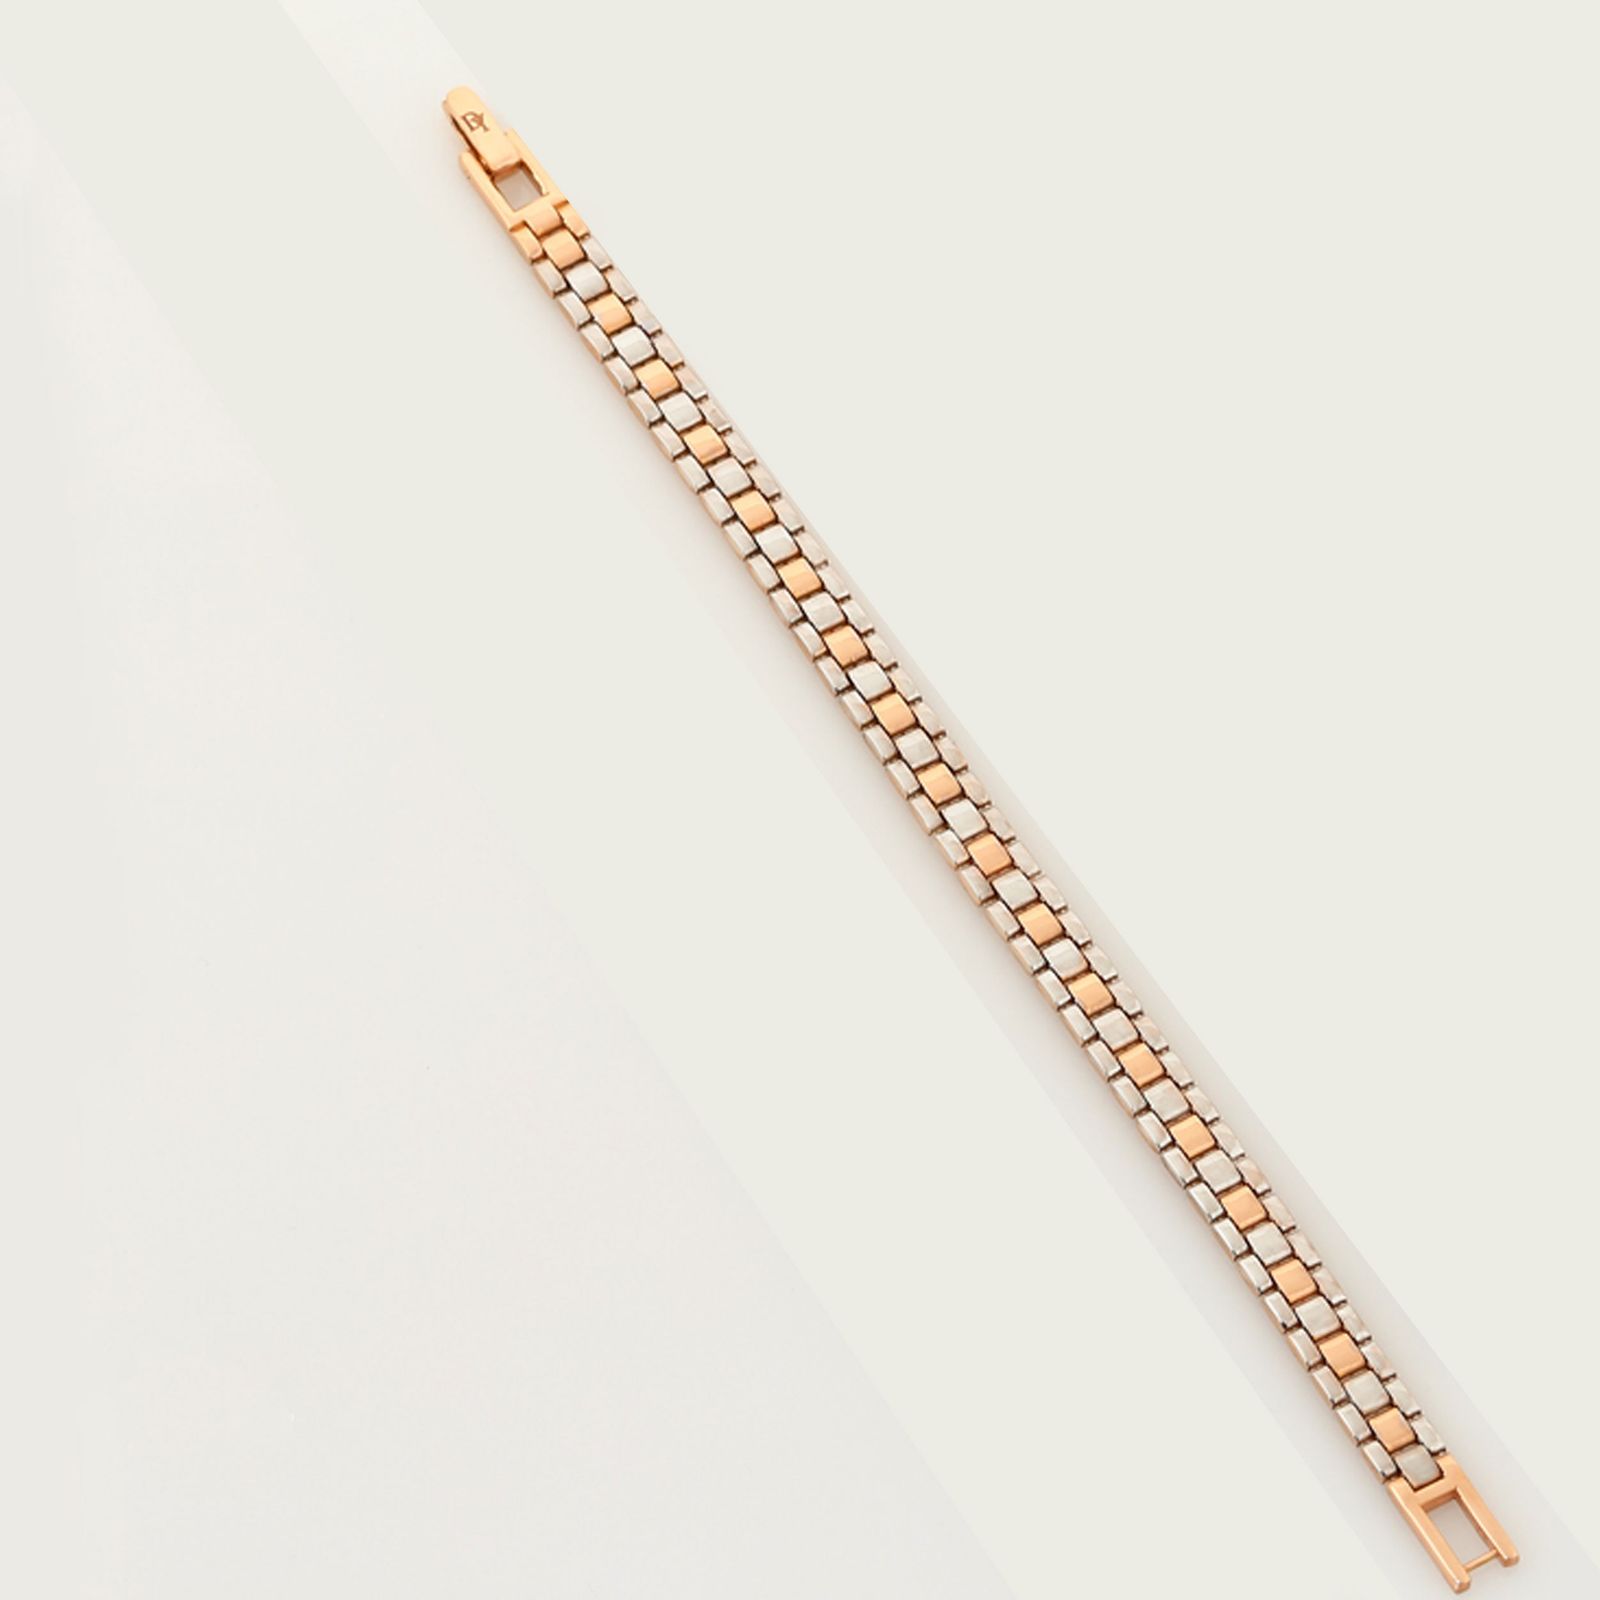 دستبند طلا 18 عیار زنانه هور گالری مدل Hcb110 -  - 3